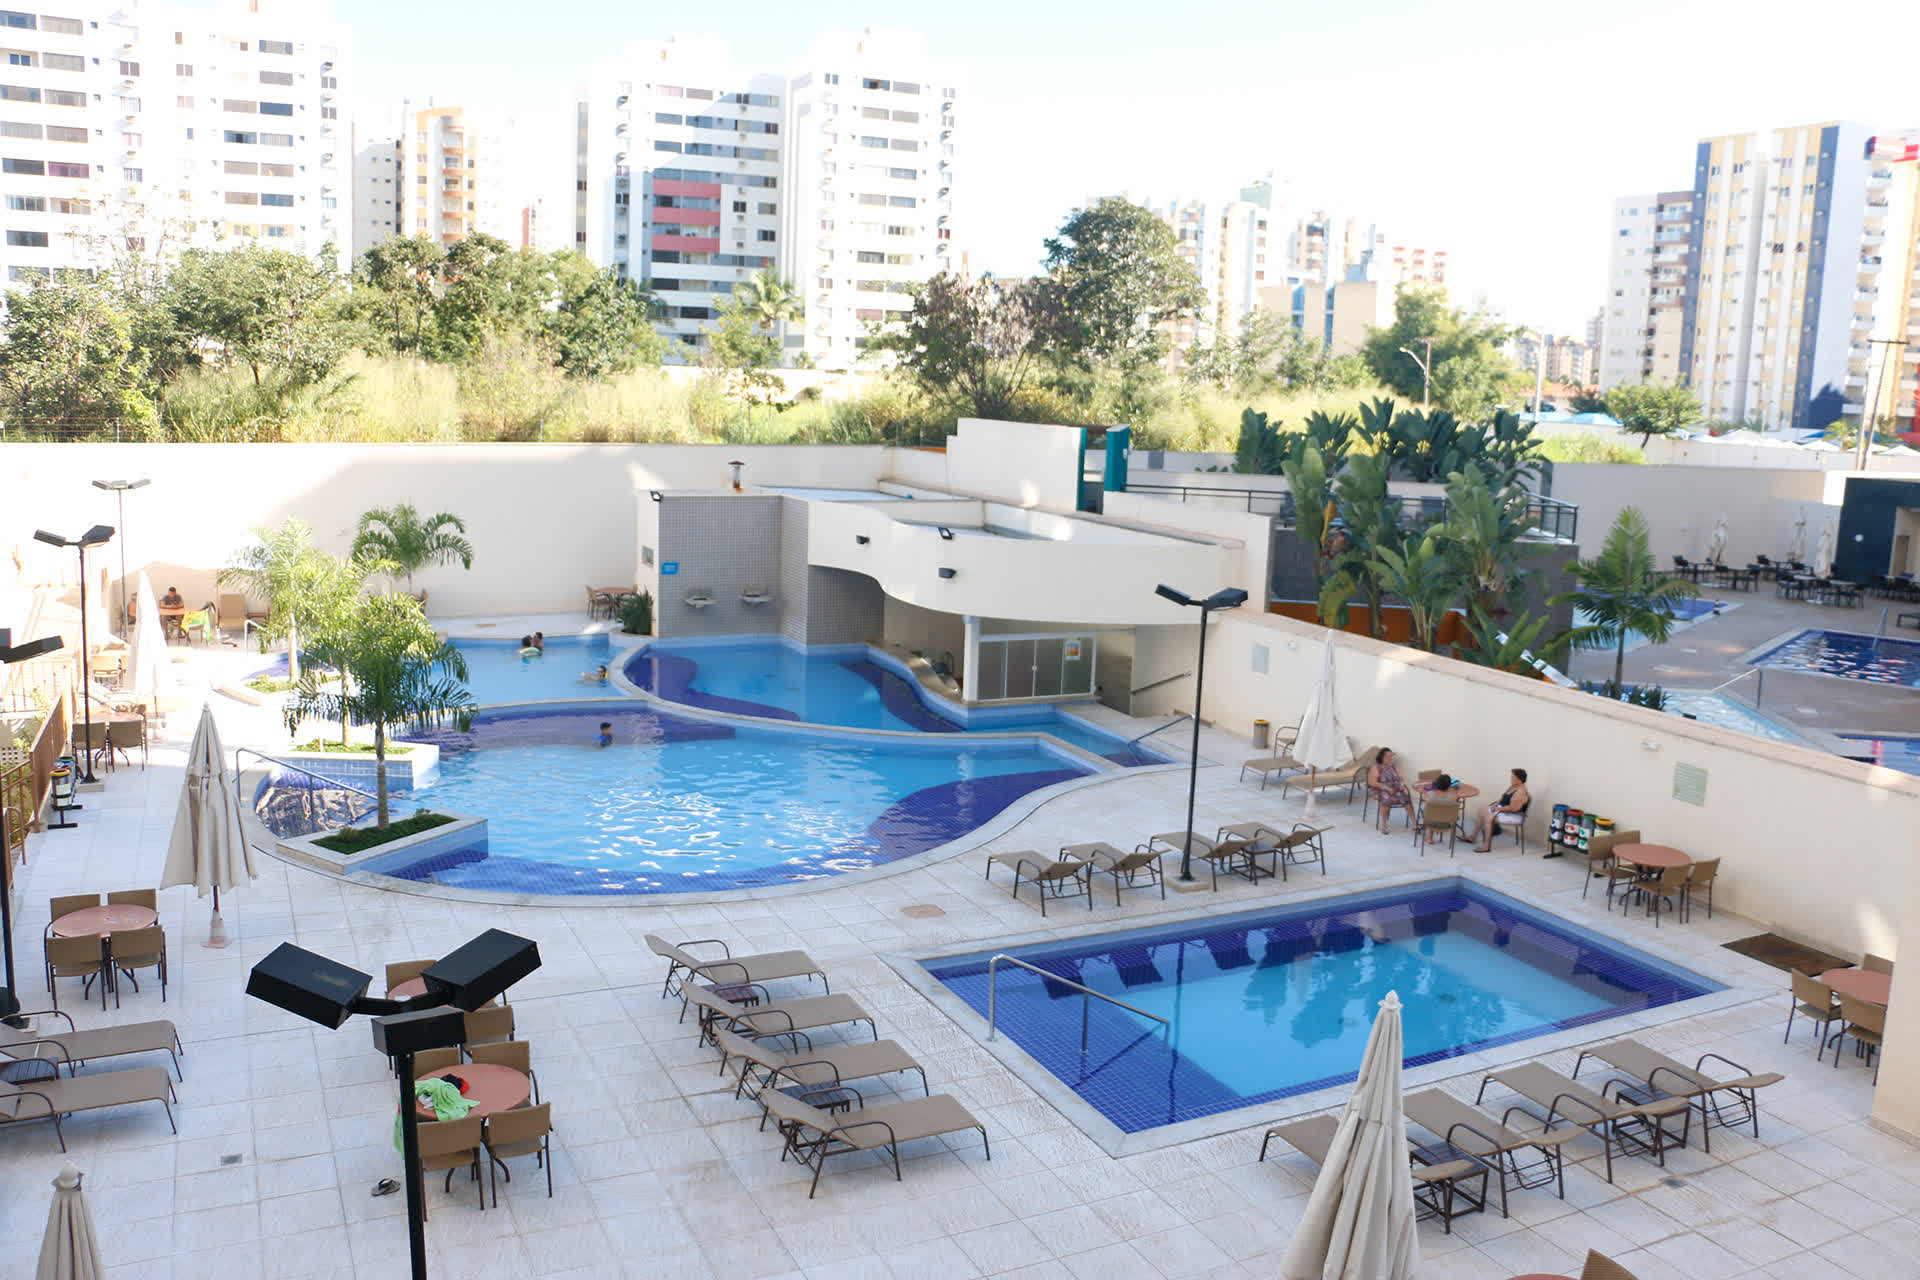 Hospedagem Atrium Thermas Residence e Service em Caldas Novas Goiás